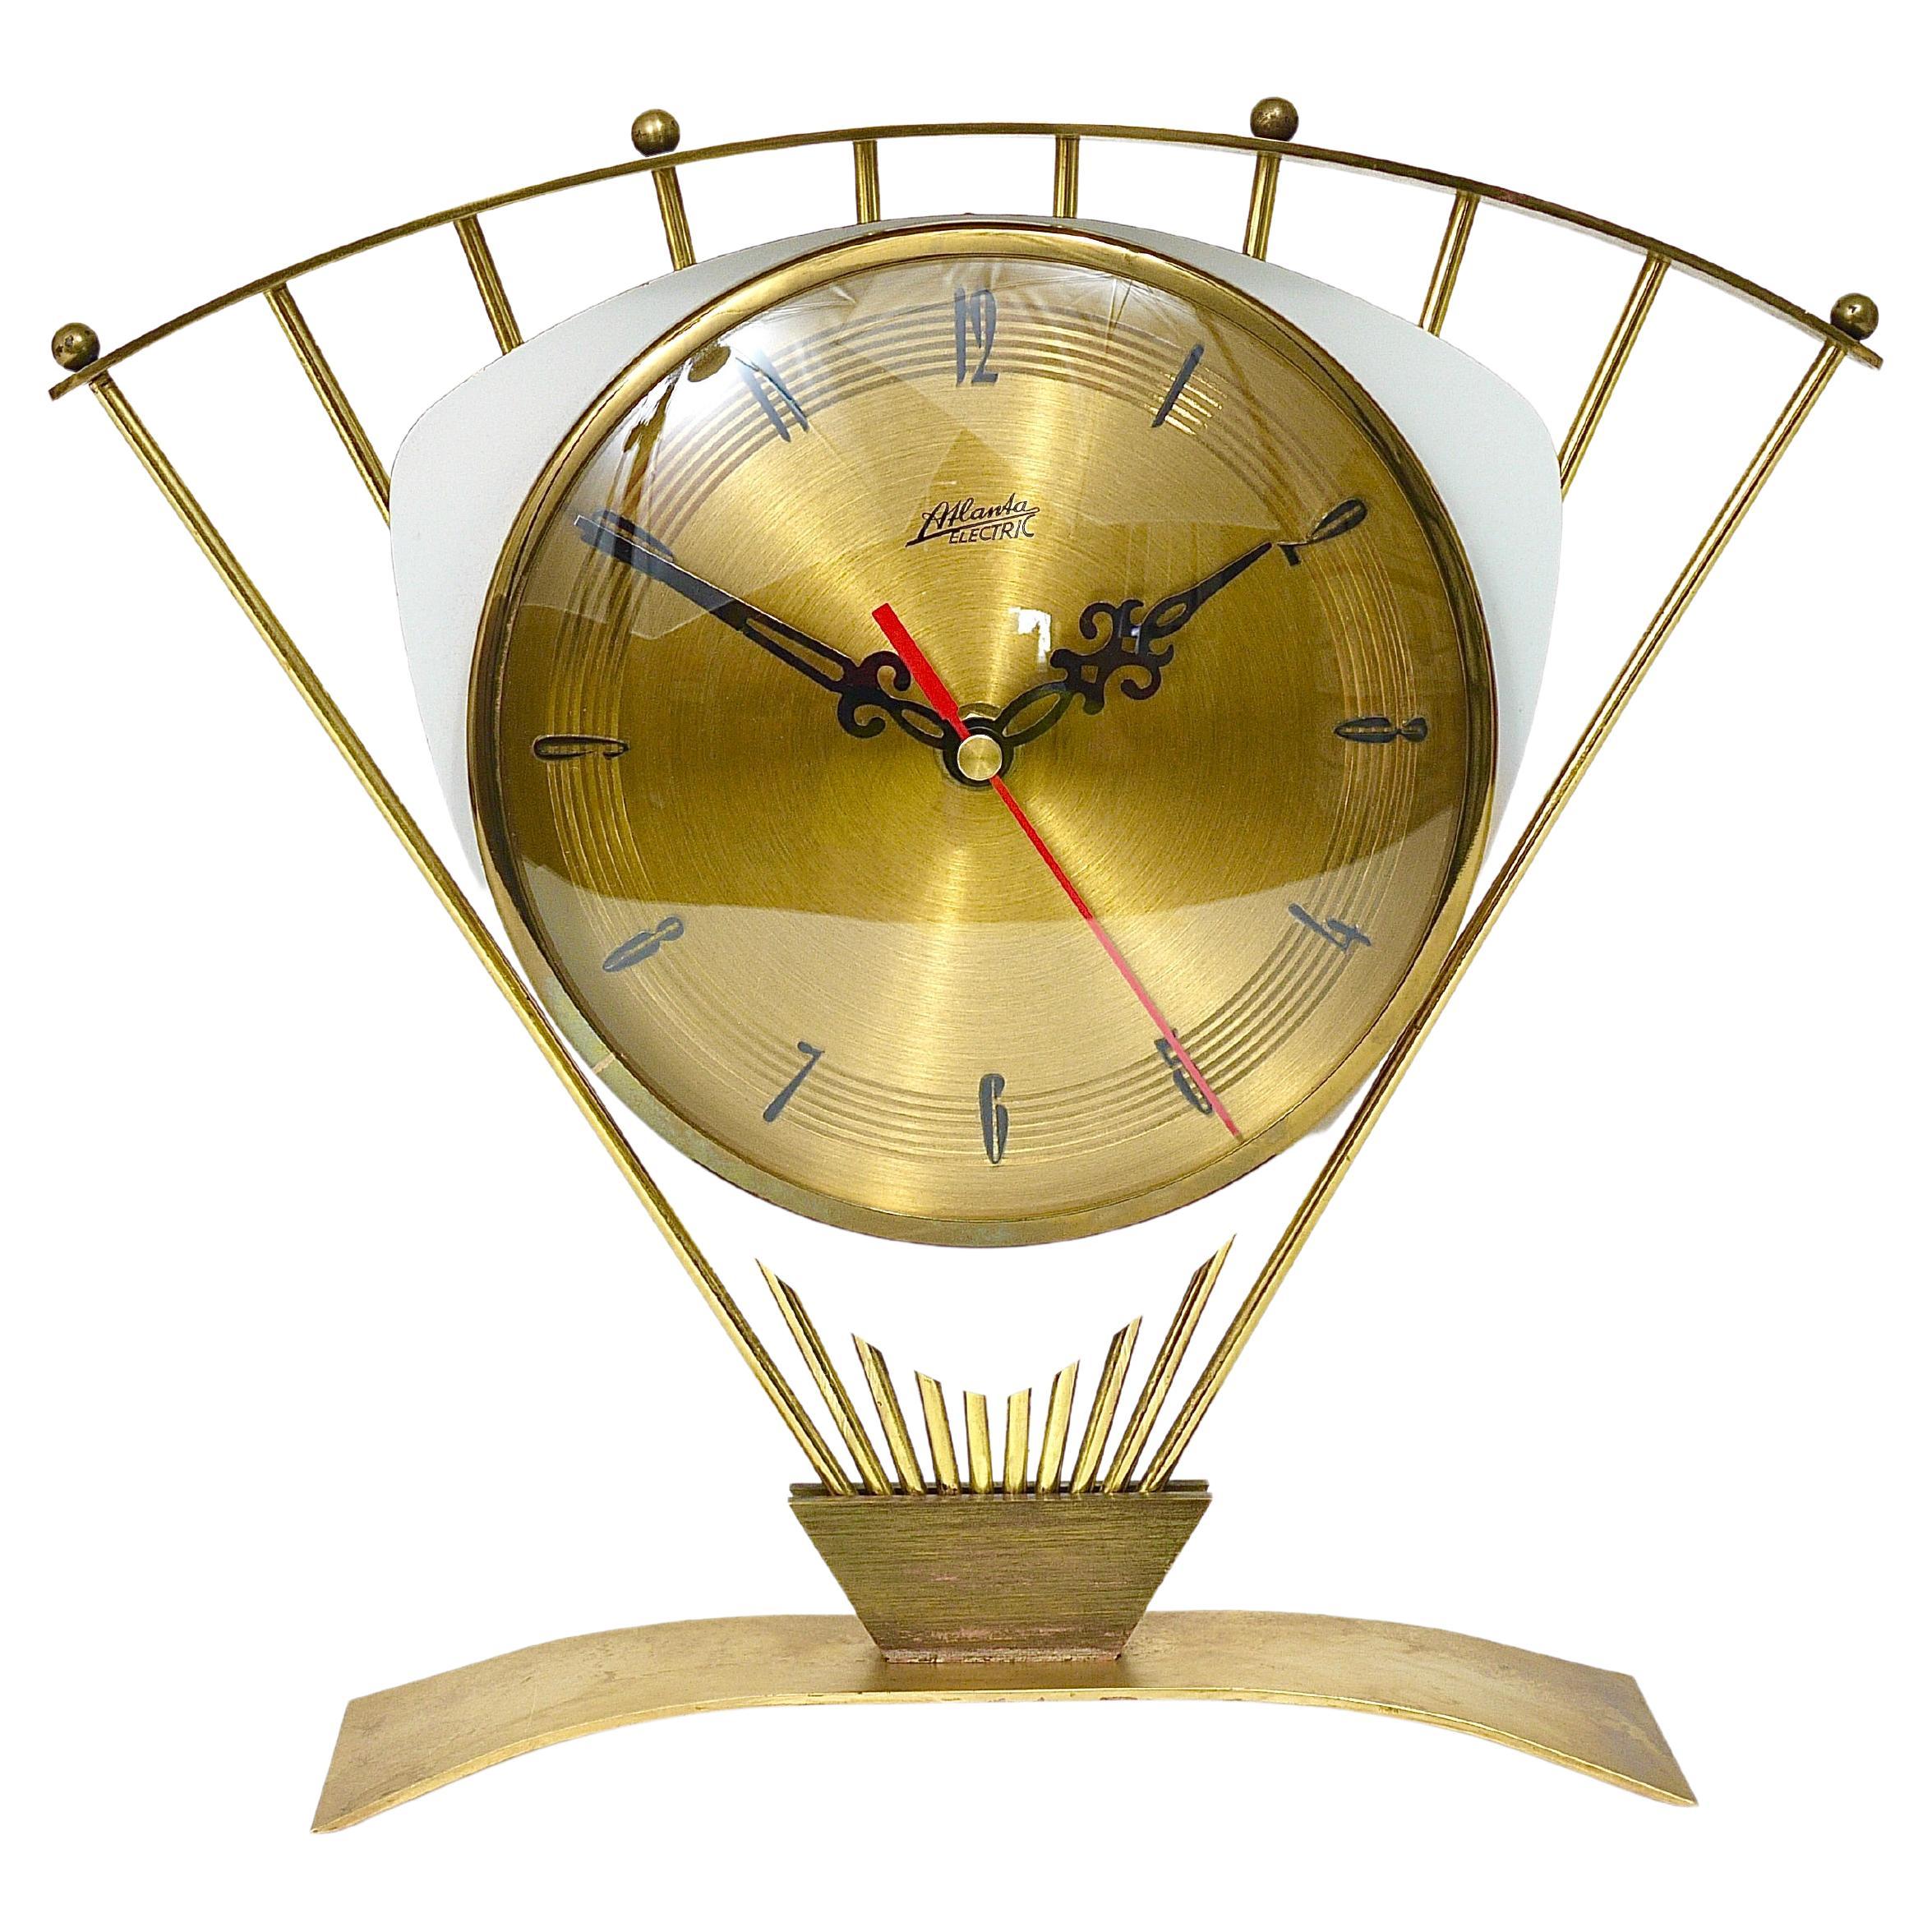 When were starburst clocks popular?